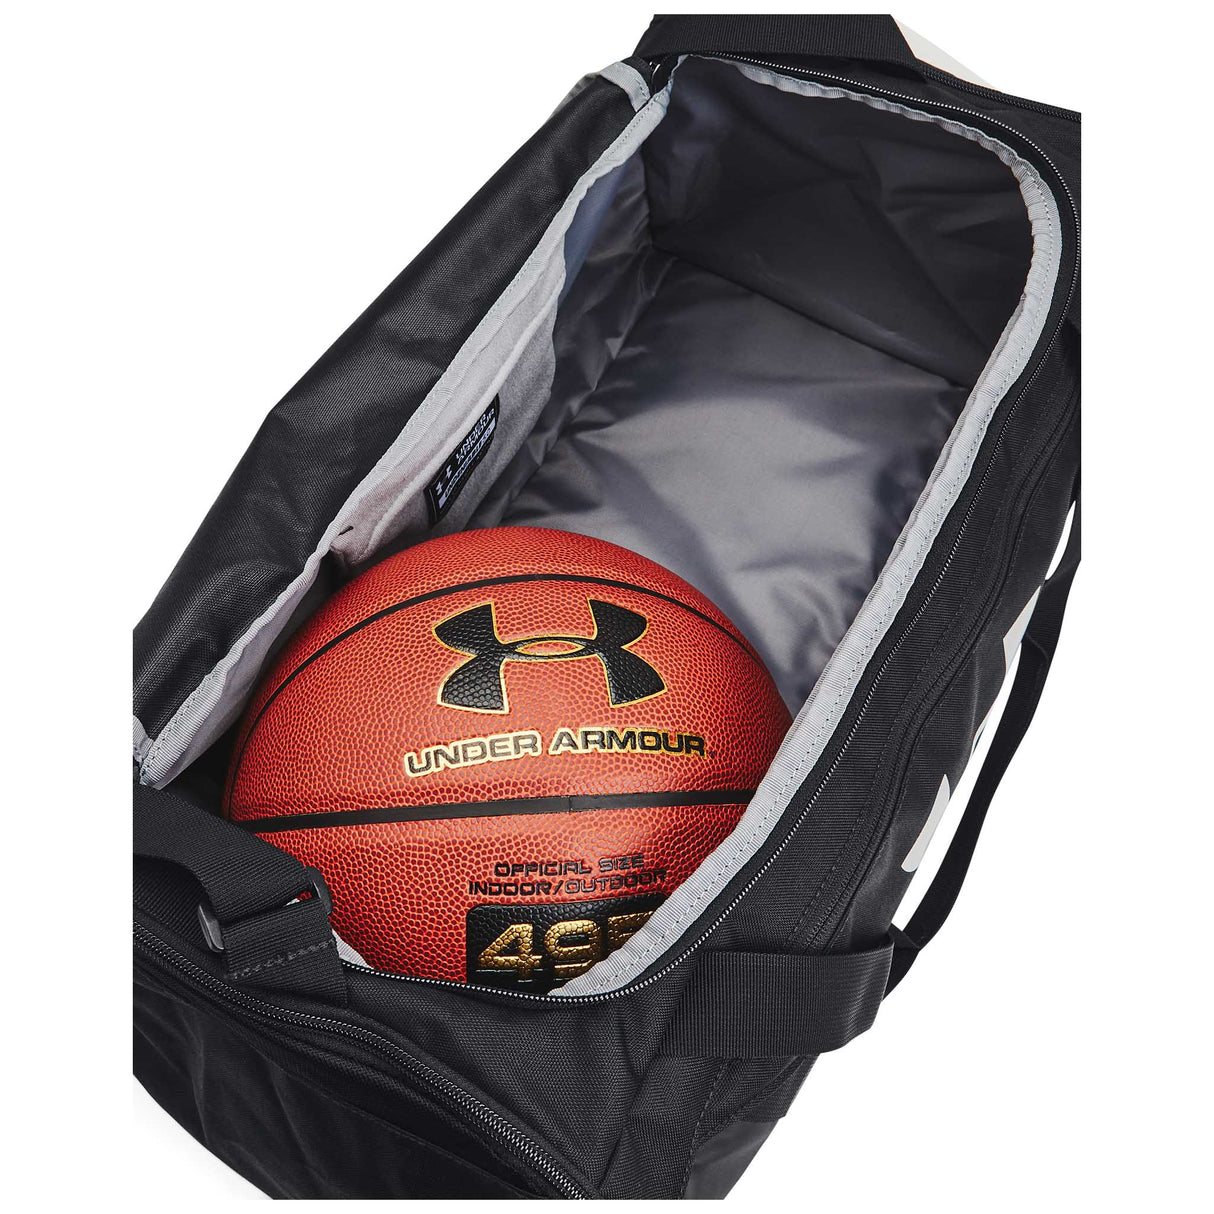 UA Undeniable 5.0 Duffle sac de sport - Small - ouvert-noir / noir / argent métallique